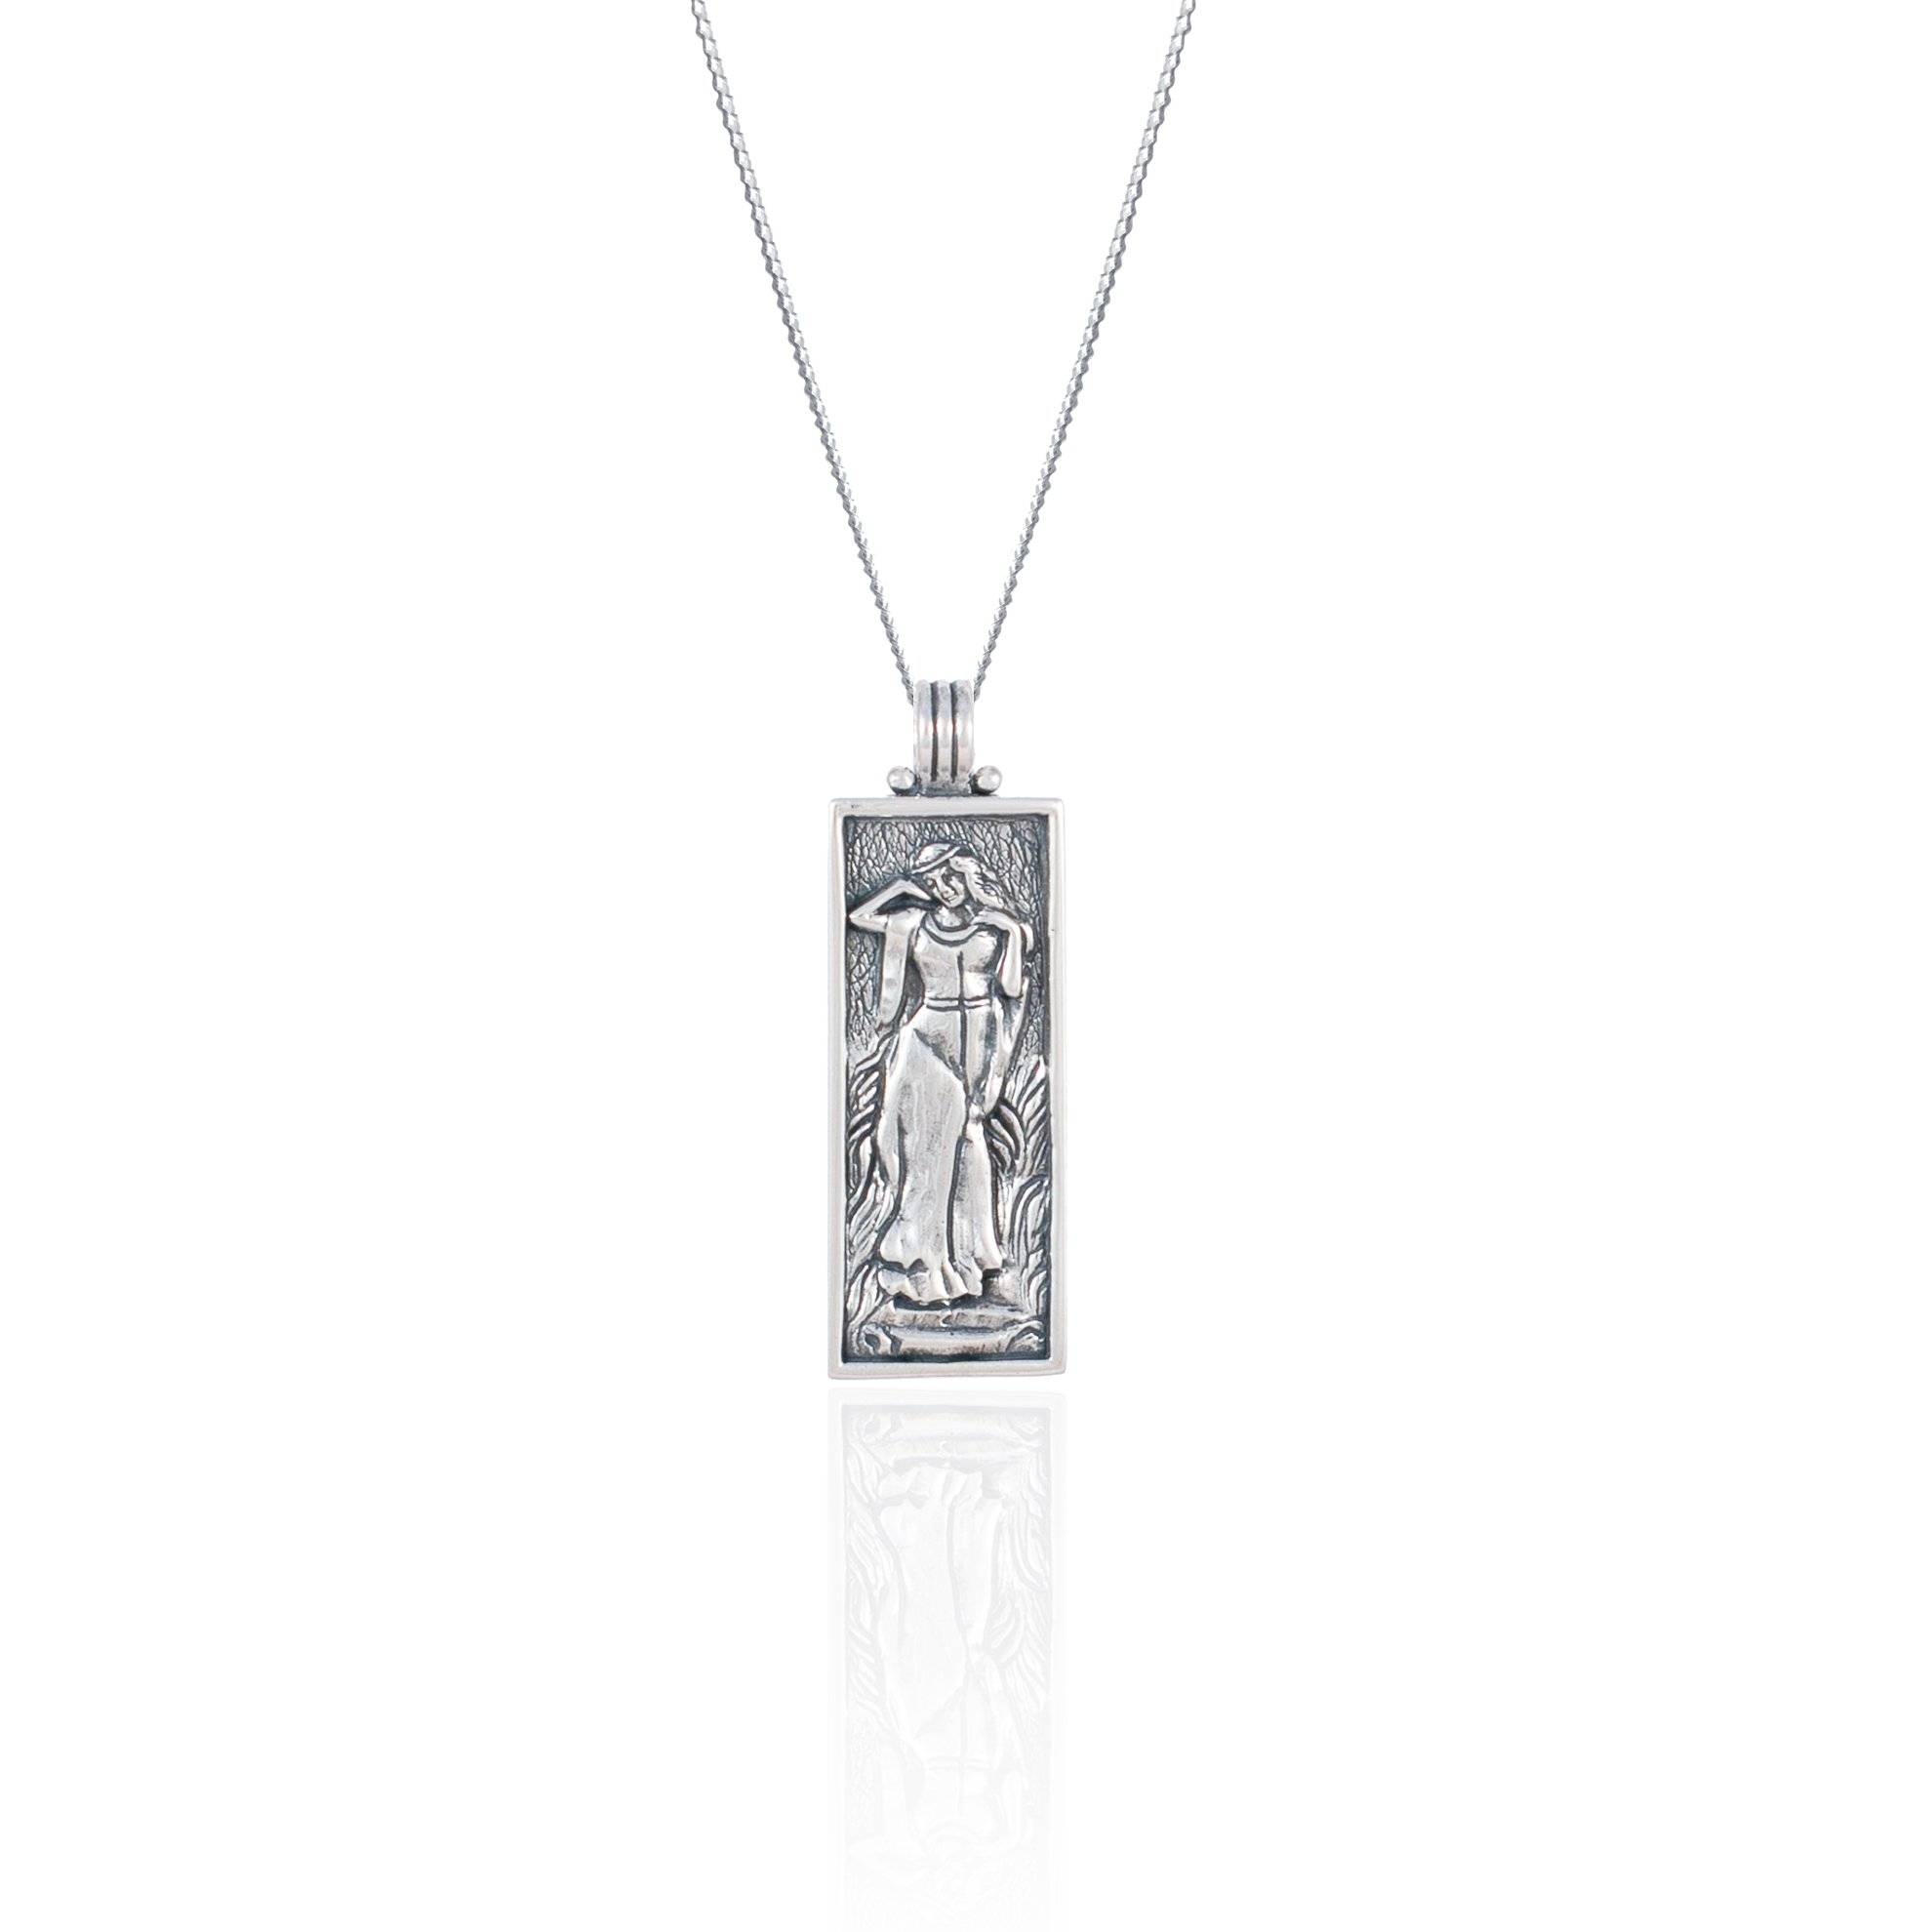 Freyja Halskette Silber - Göttin der Liebe, Schönheit & Fruchtbarkeit  Anhänger